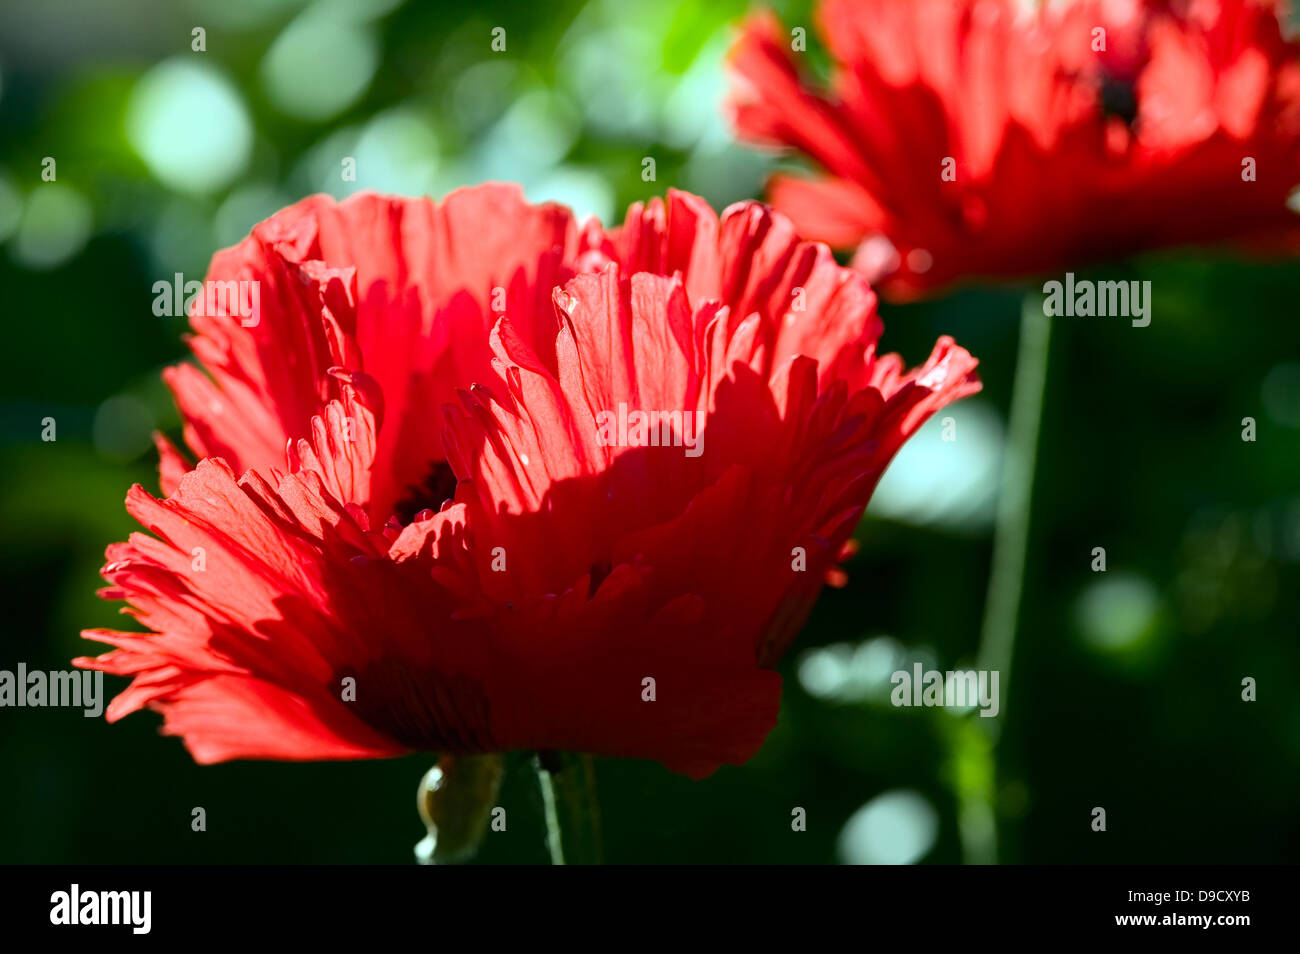 Die rote Blume auf grüner Natur Hintergrund Stockfoto